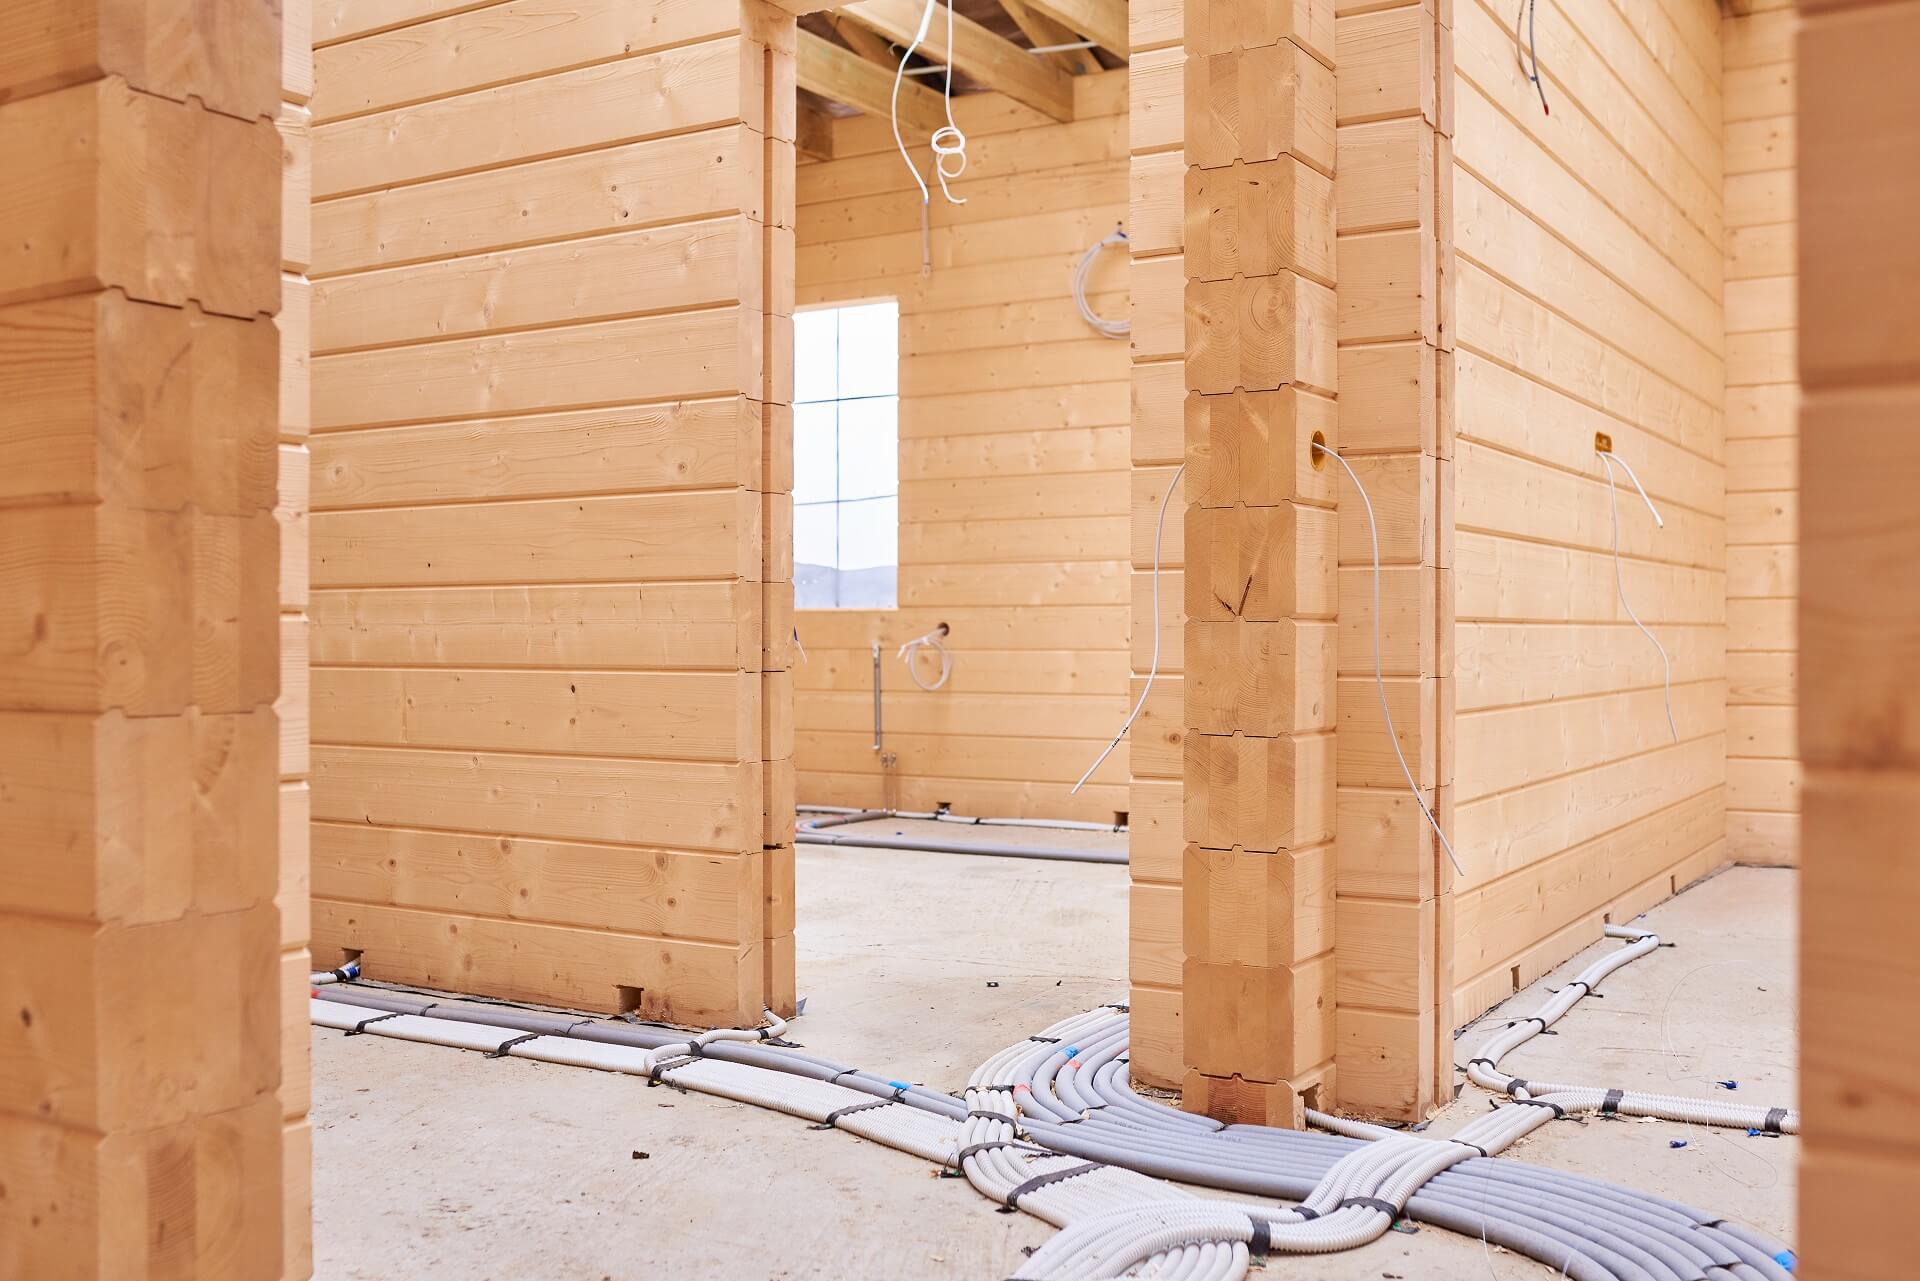 Ein Bild, das die Innenansicht eines im Bau befindlichen Holzhauses zeigt. Erfahren Sie mehr über die handwerkliche Präzision und den Fortschritt dieses beeindruckenden Bauprojekts.